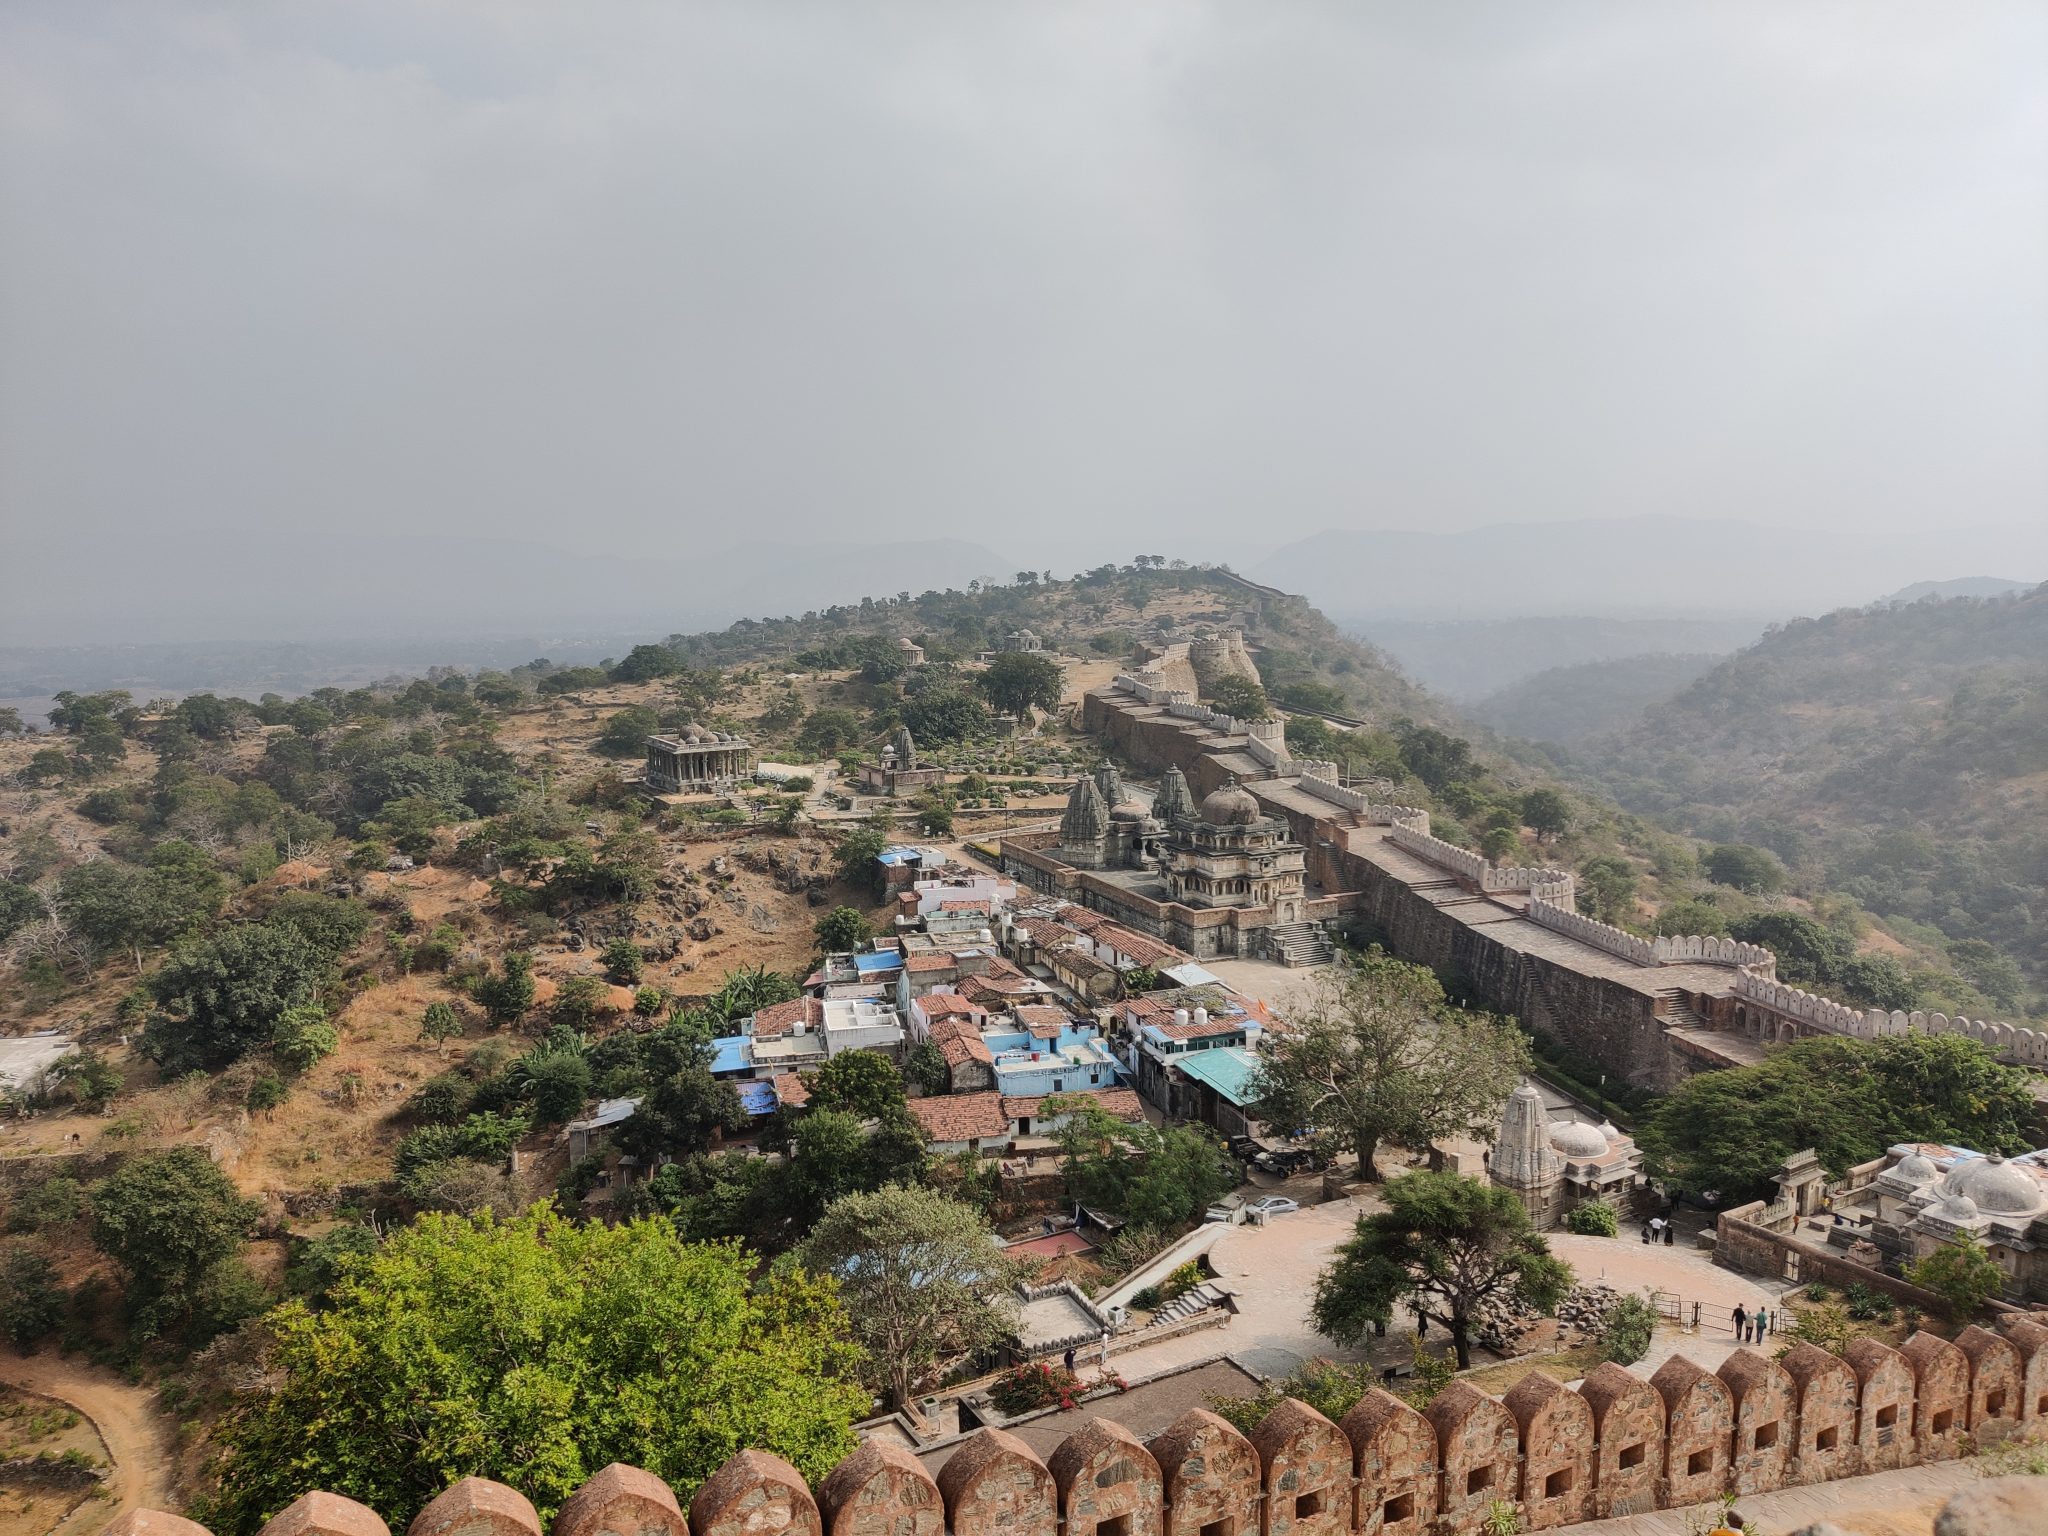 View from Kumbhalgarh Fort